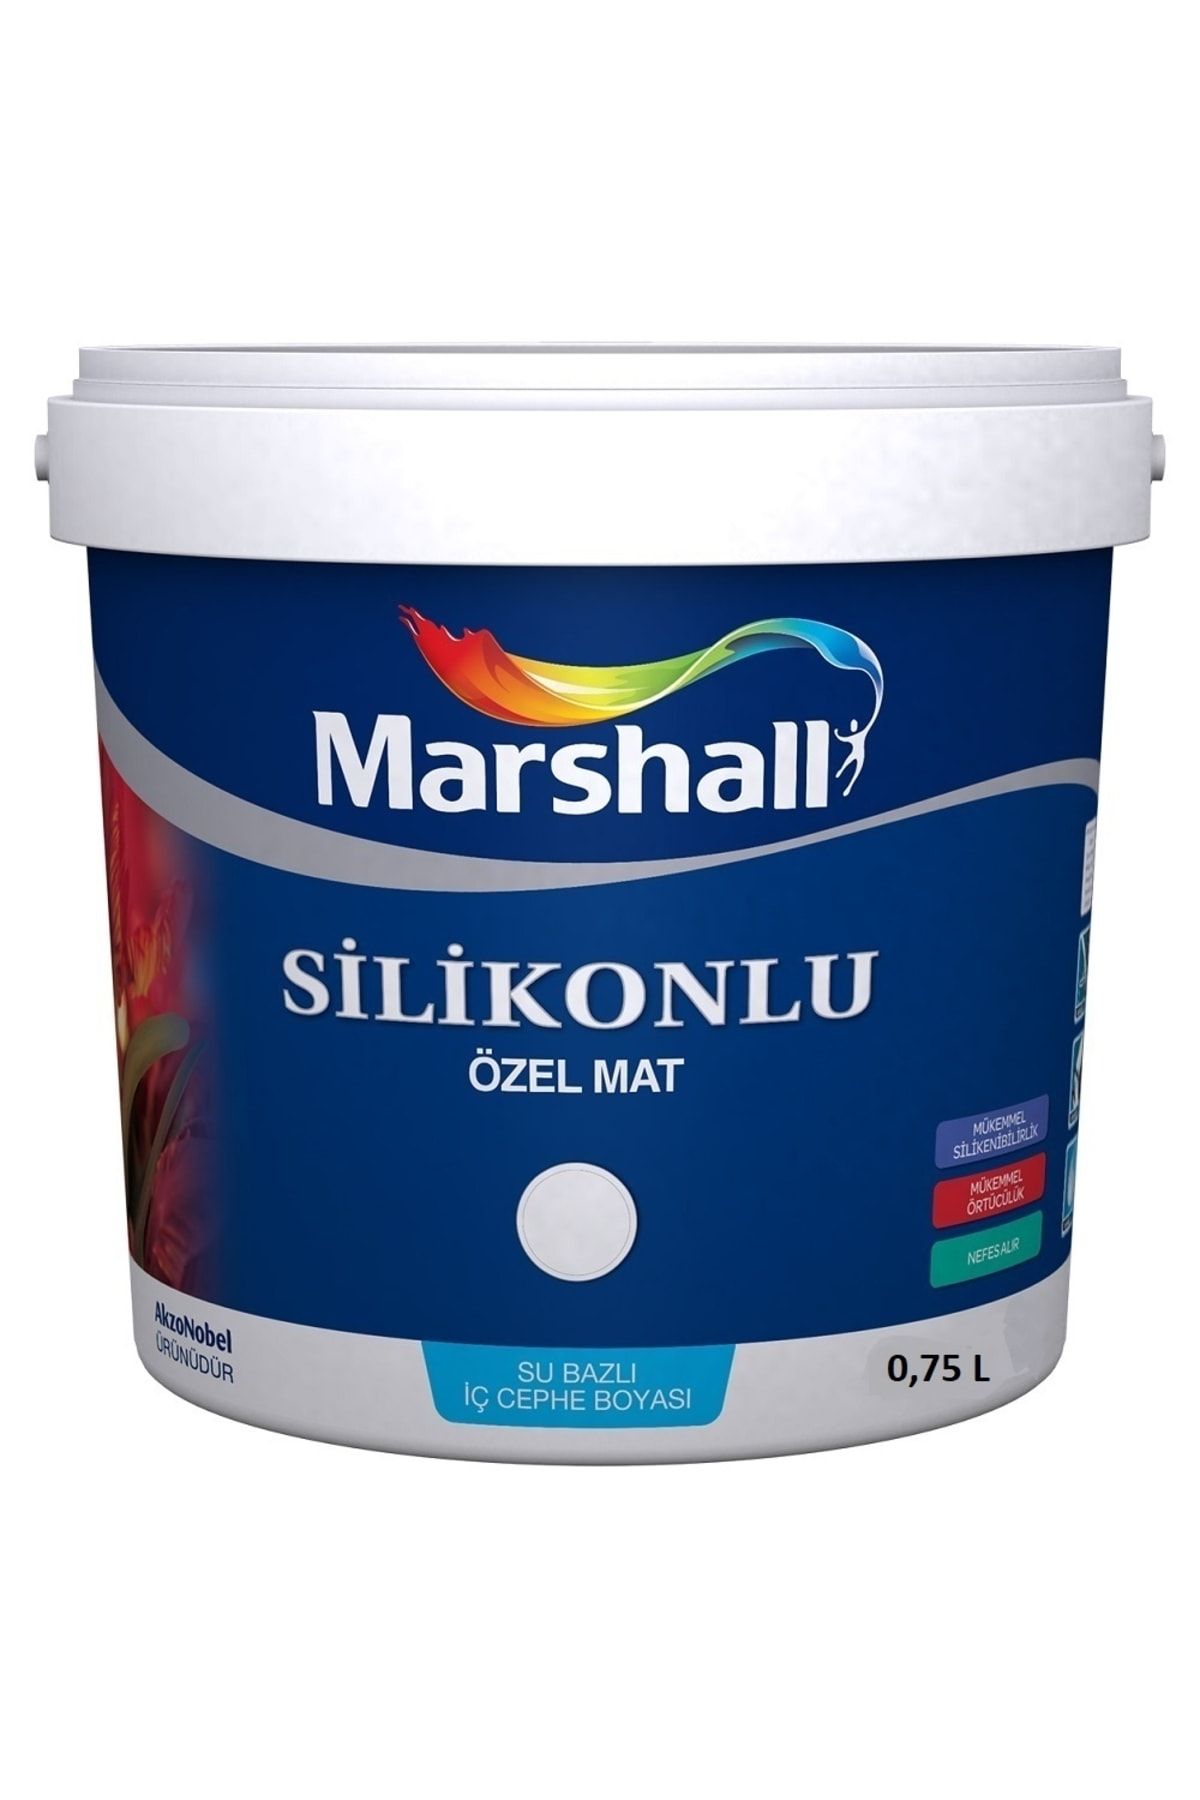 Marshall Silikonlu Özel Mat Silinebilir Iç Cephe Duvar Boyası 0.75 L Beyaz